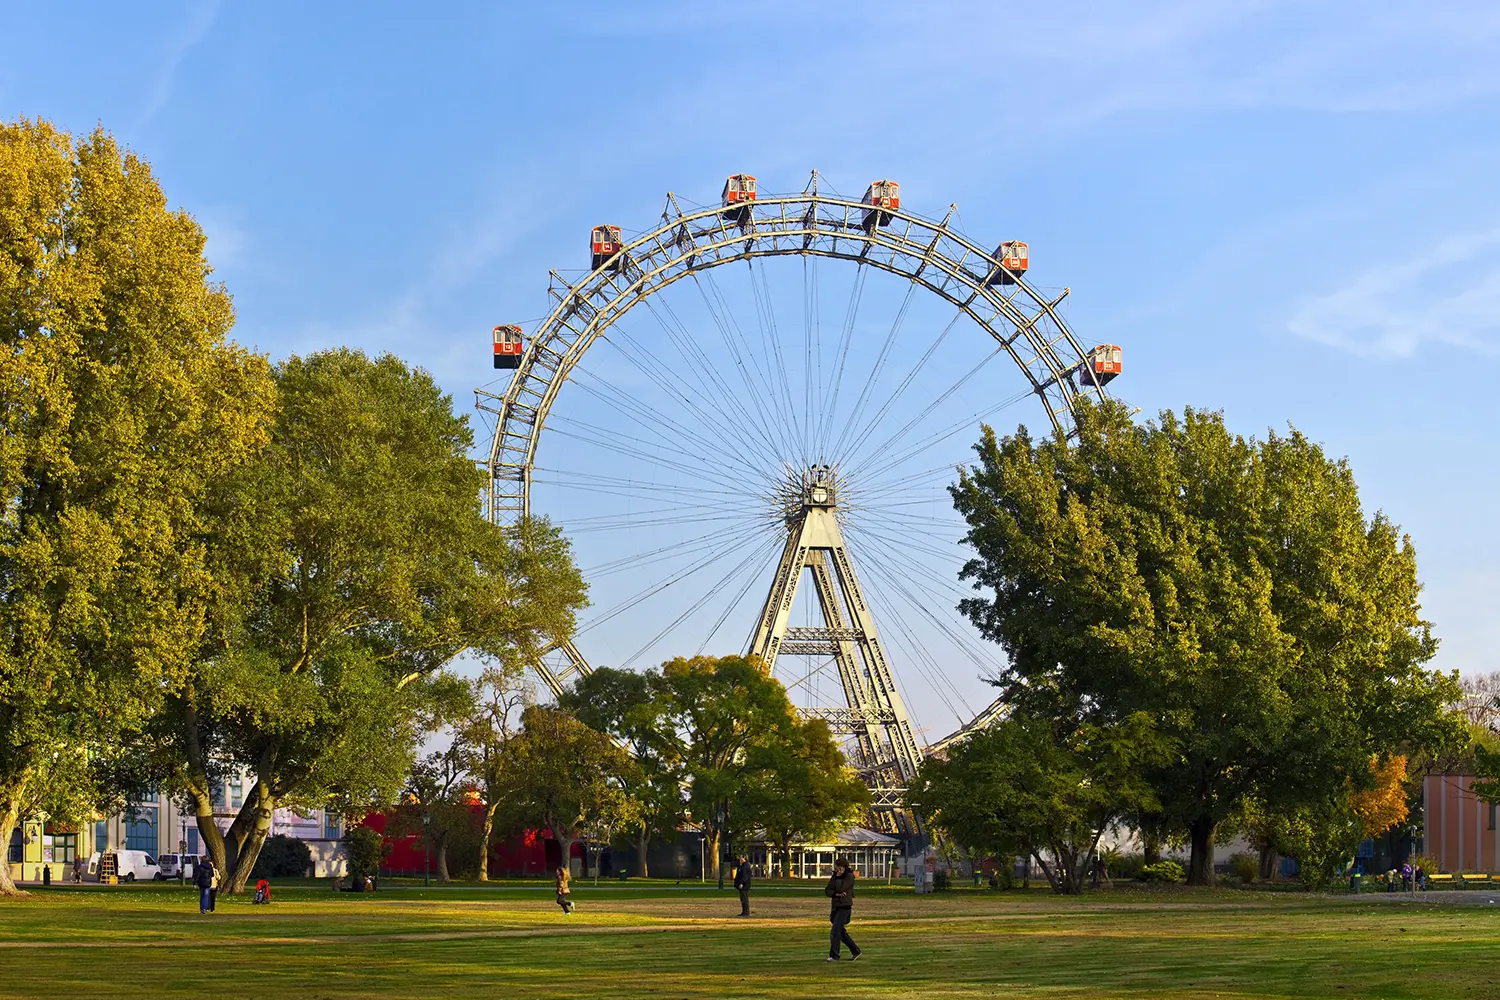 Giant ferris wheel in Vienna Prater